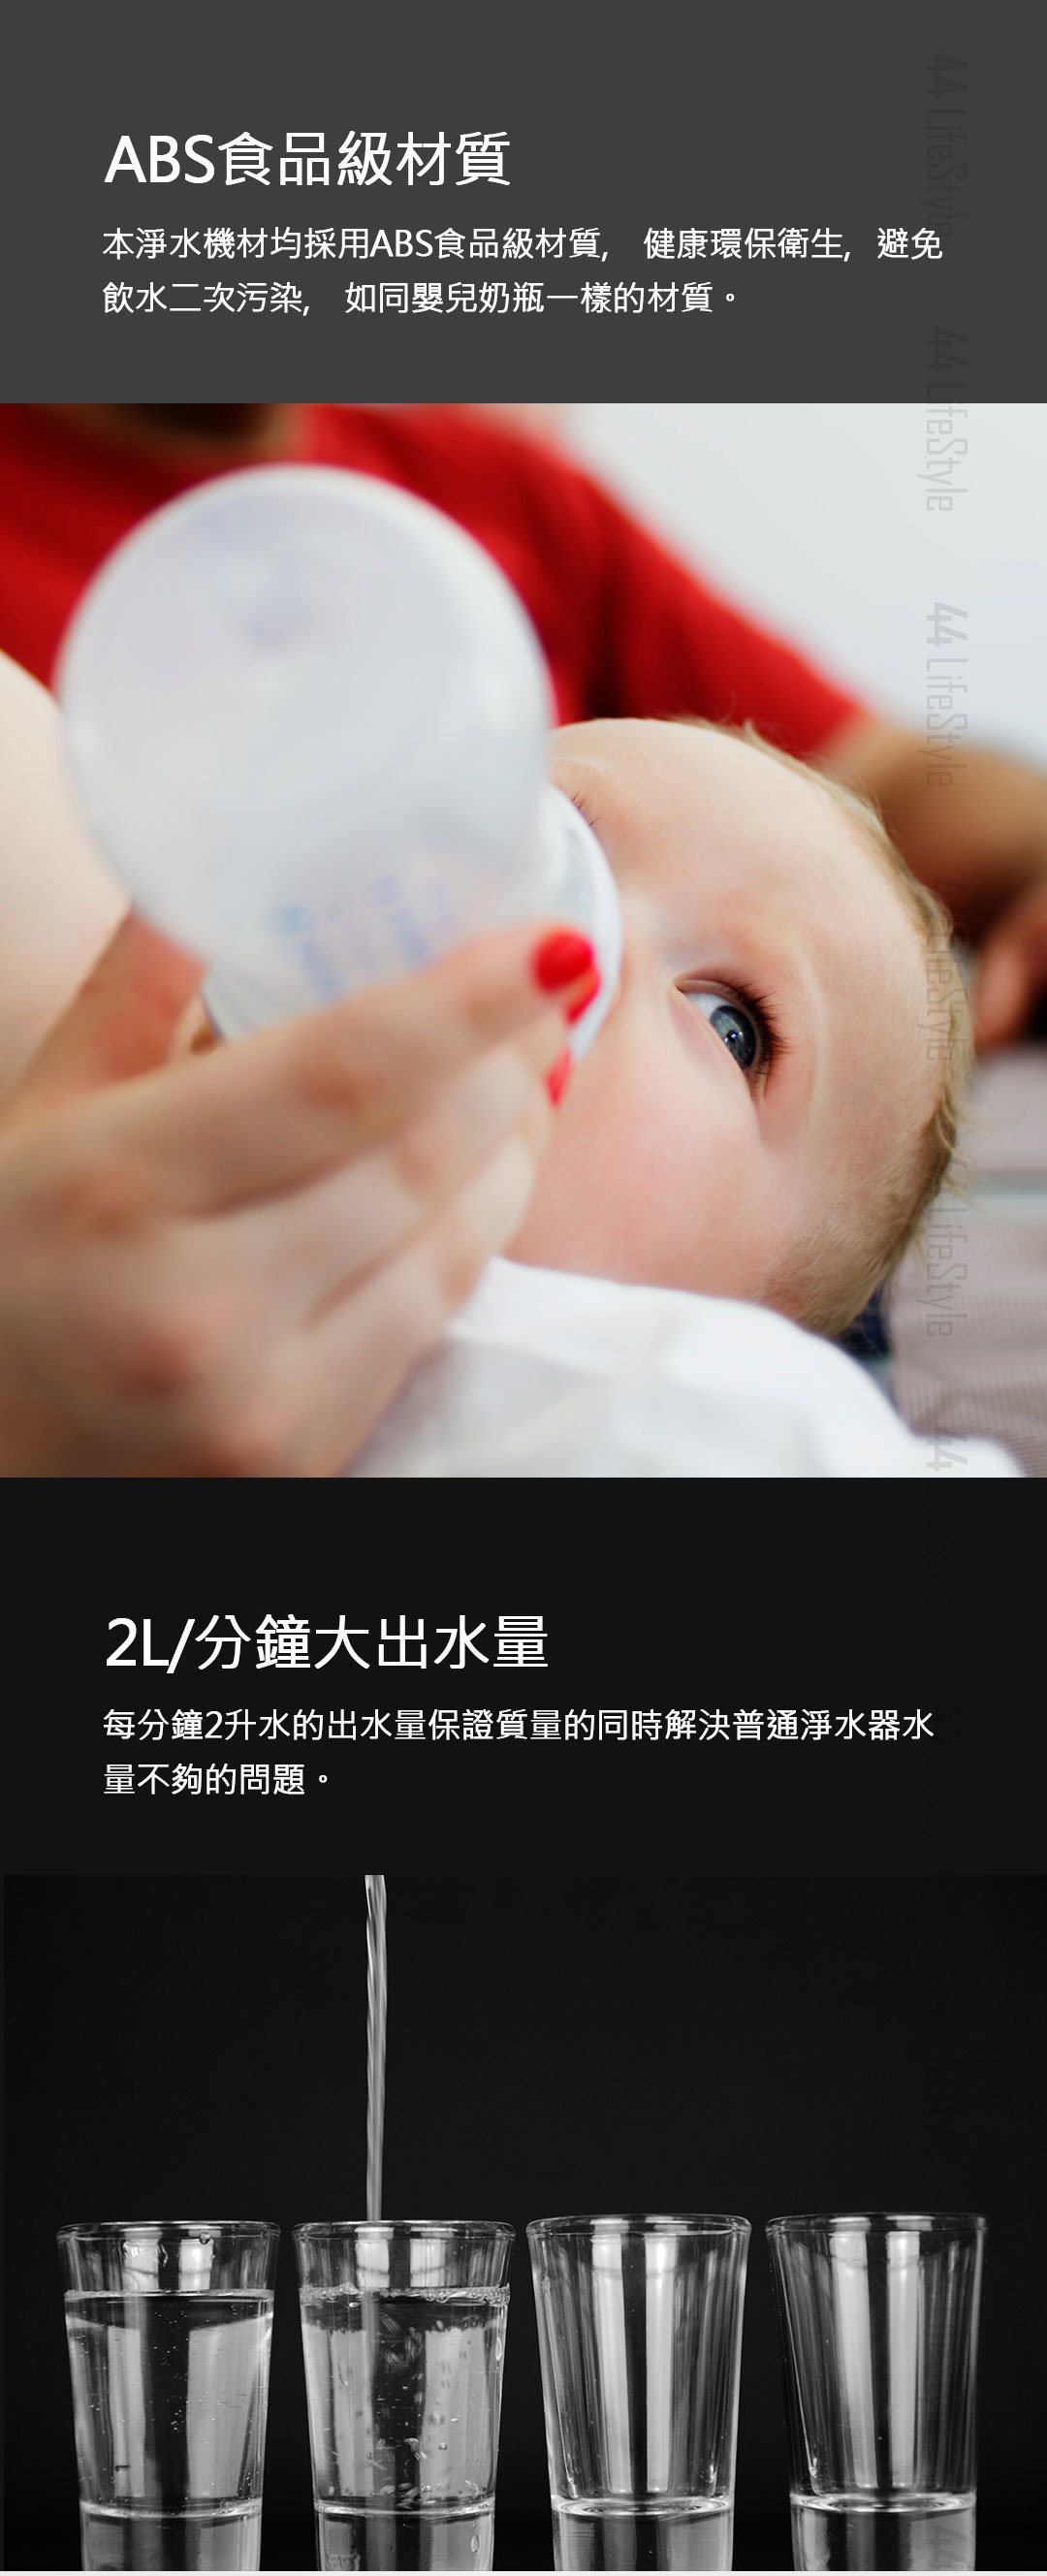 Xiaomi Youpin Xiaolang Faucet Water Purifier Hd Ltjsq02 Water Purifier Water Purifier Filer Hktvmall Online Shopping